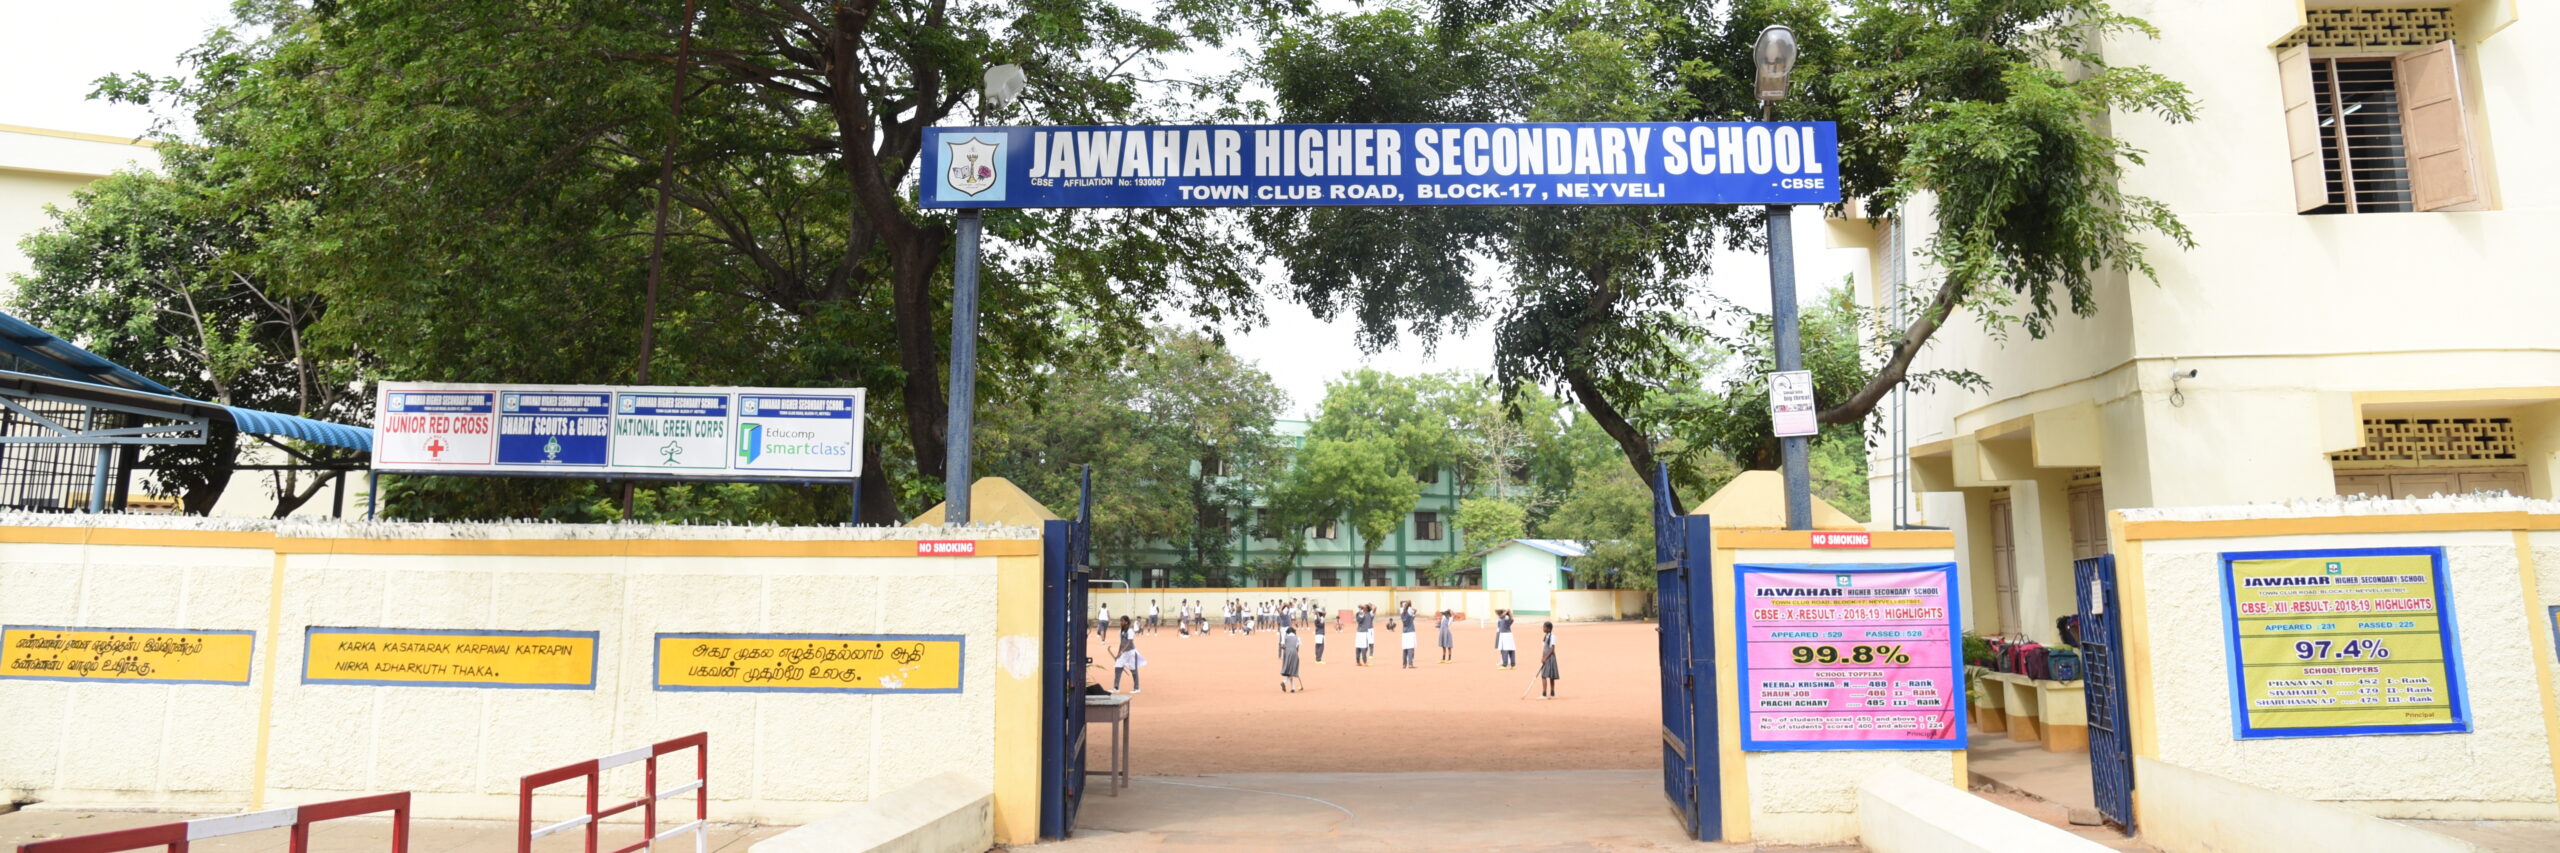 school entrance1